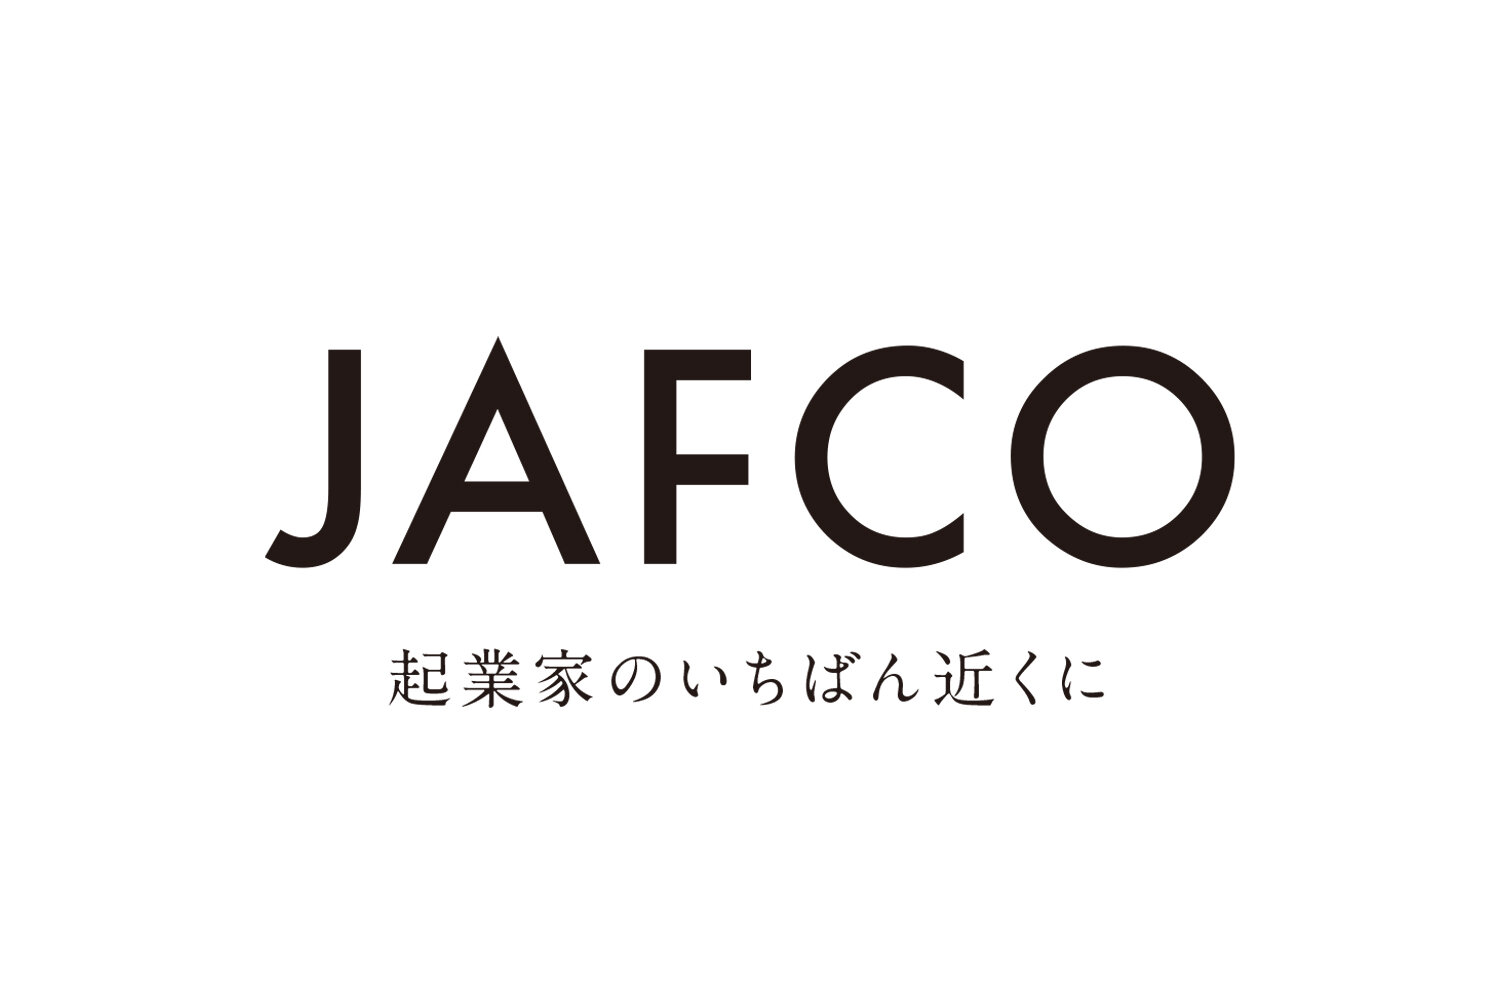 jsfco logo 2.jpg